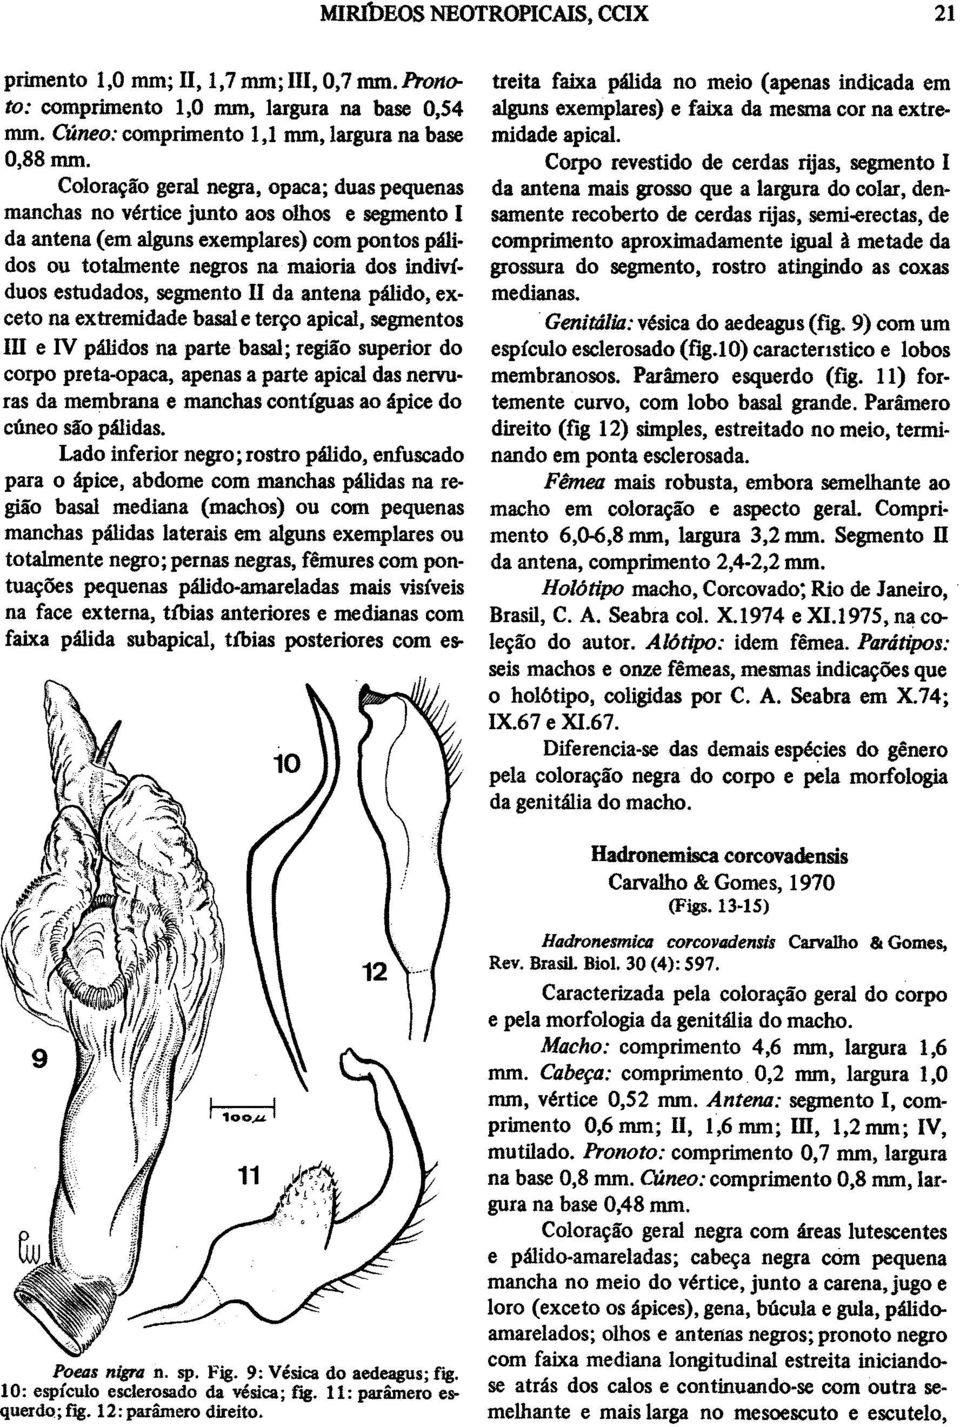 estudados, segmento II da antena palido, exceto na extremidade basal e tervo apical, segmentos IHI e IV palidos na parte basal; regiao superior do corpo preta-opaca, apenas a parte apical das